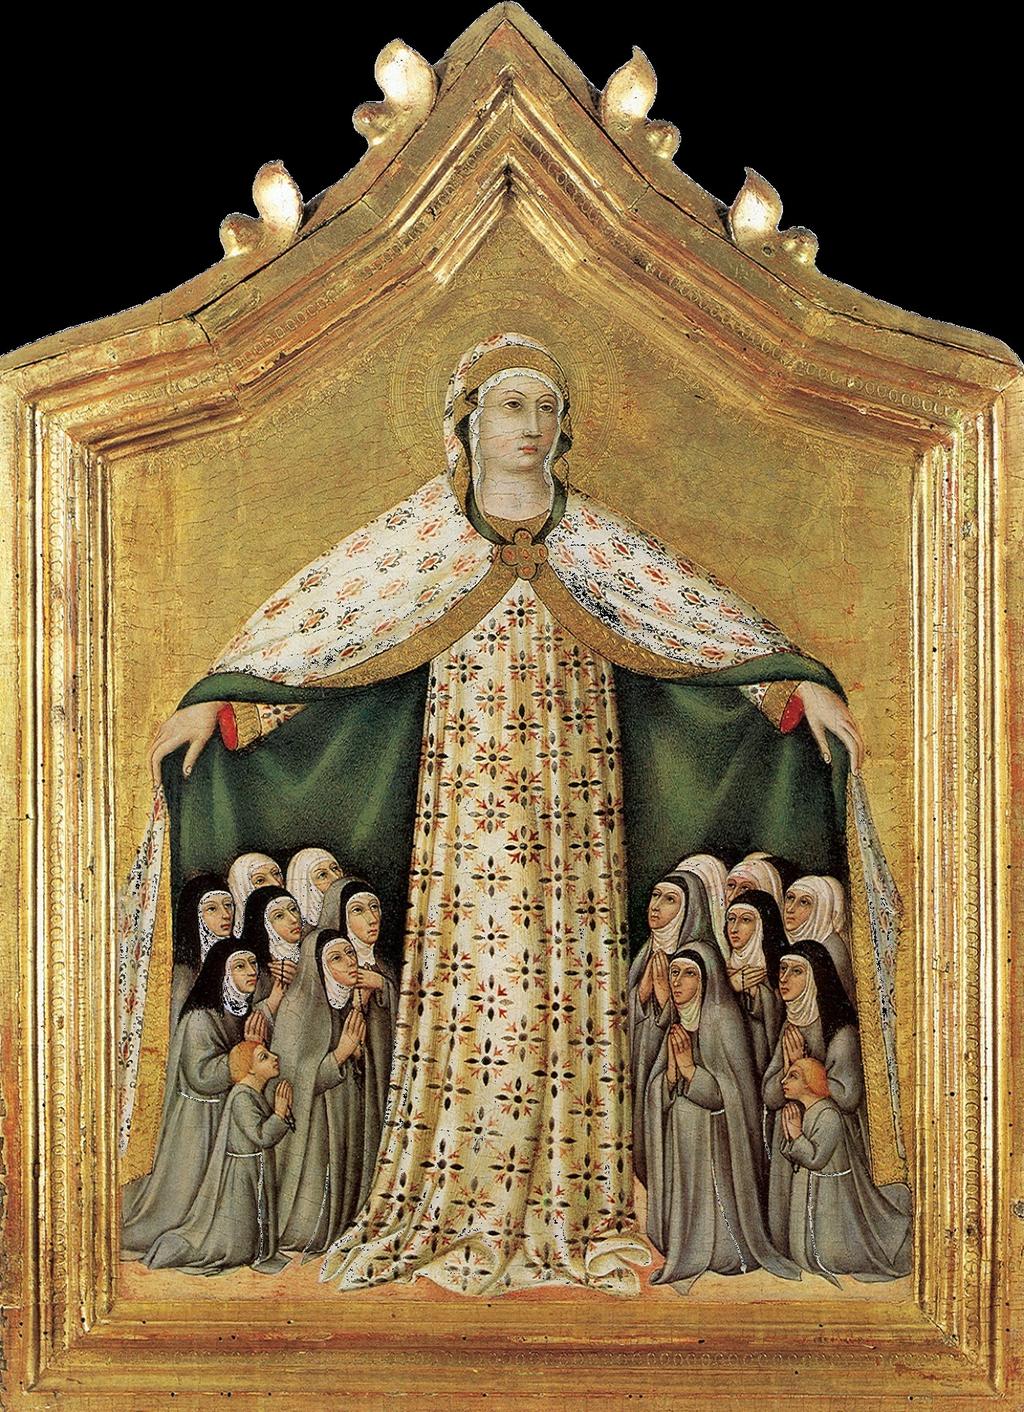 Madonna of Mercy by Sano di Pietro